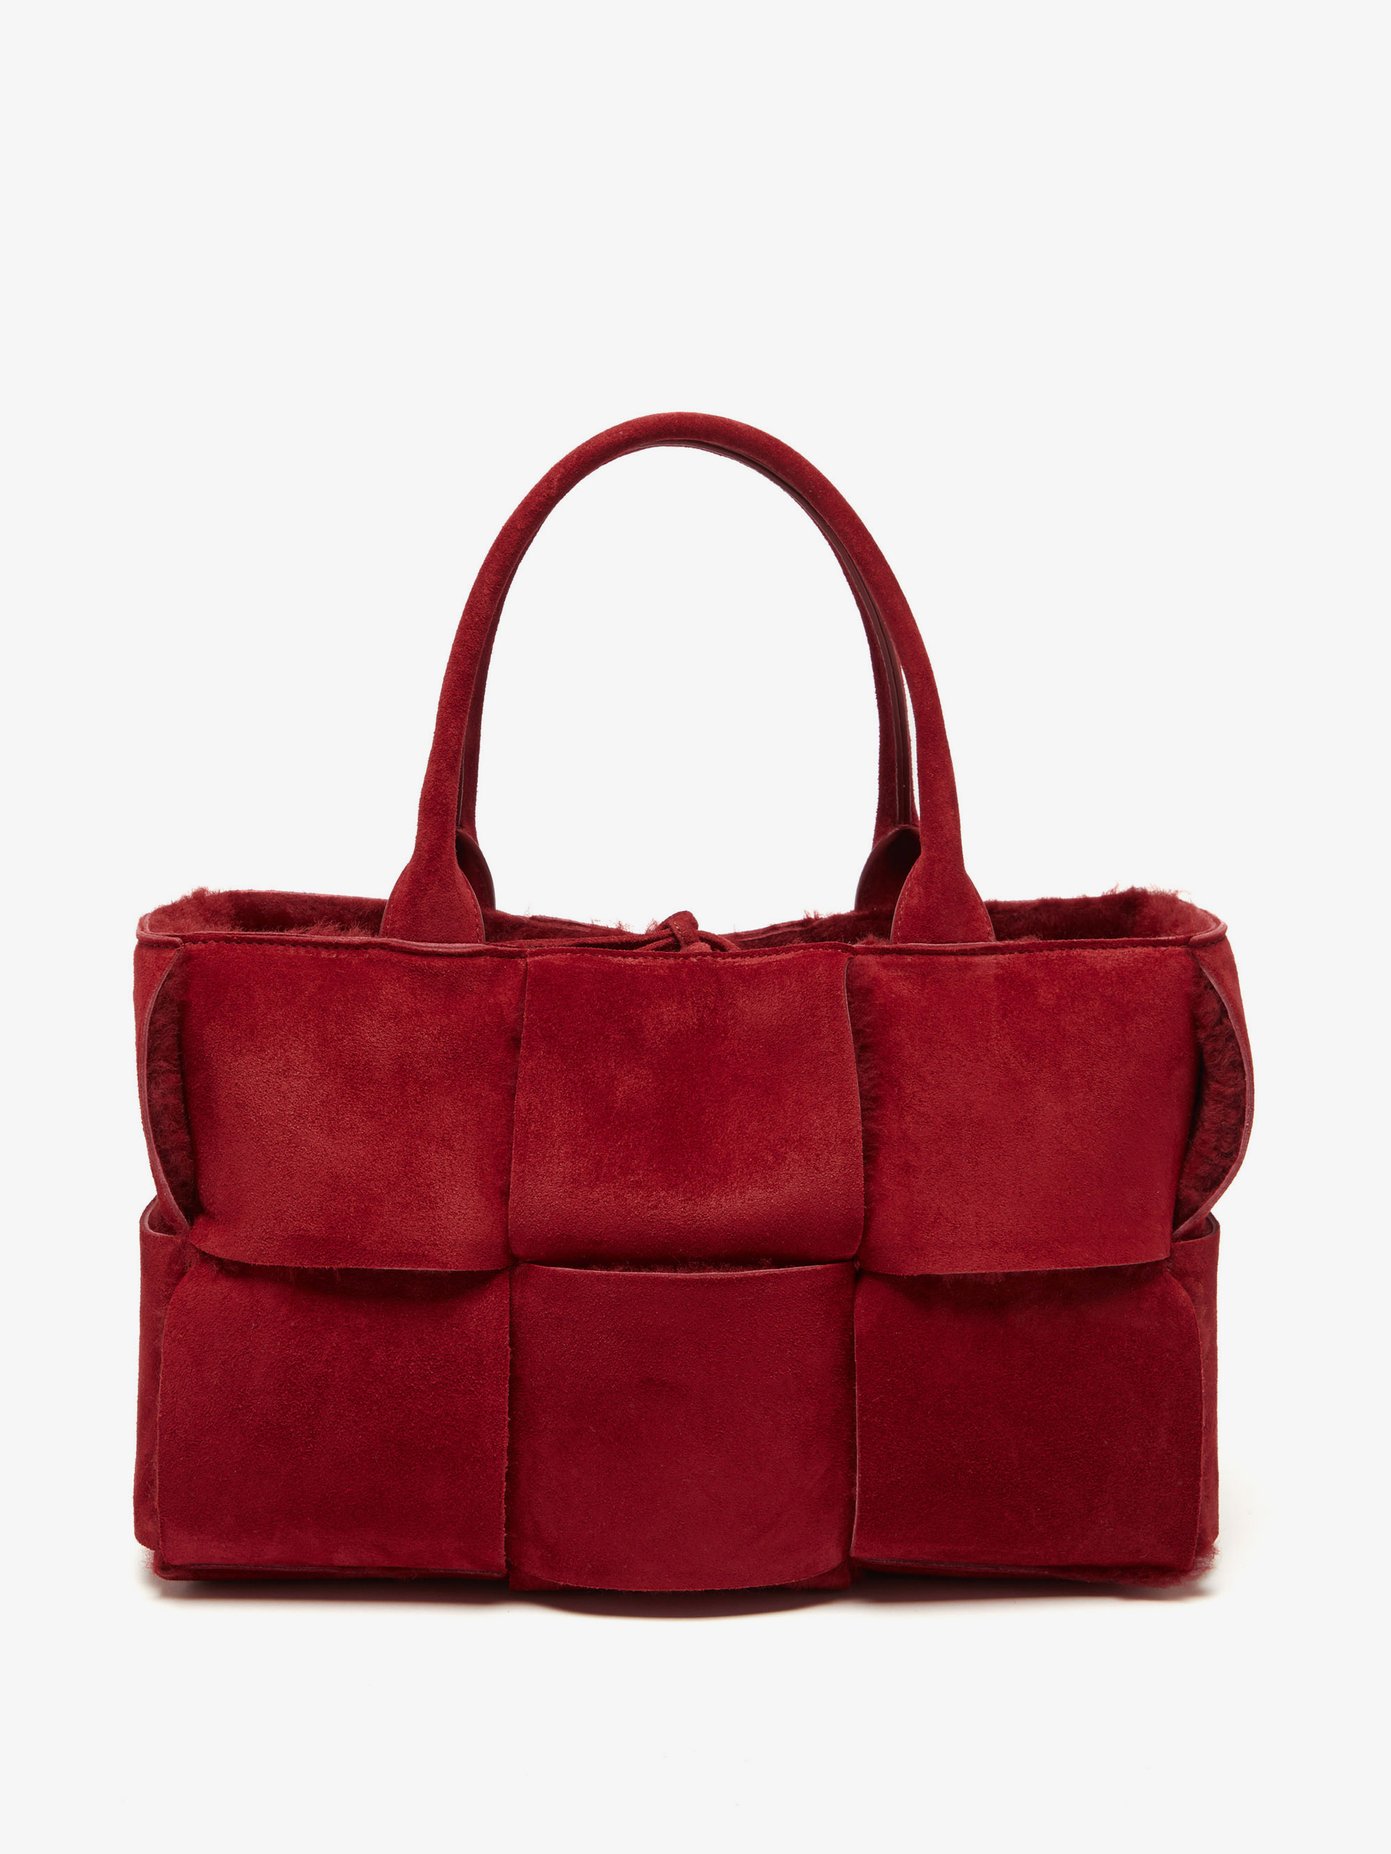 보테가 베네타 아르코 토트백, 시어링 Bottega Veneta Burgundy The Arco suede and shearling tote bag